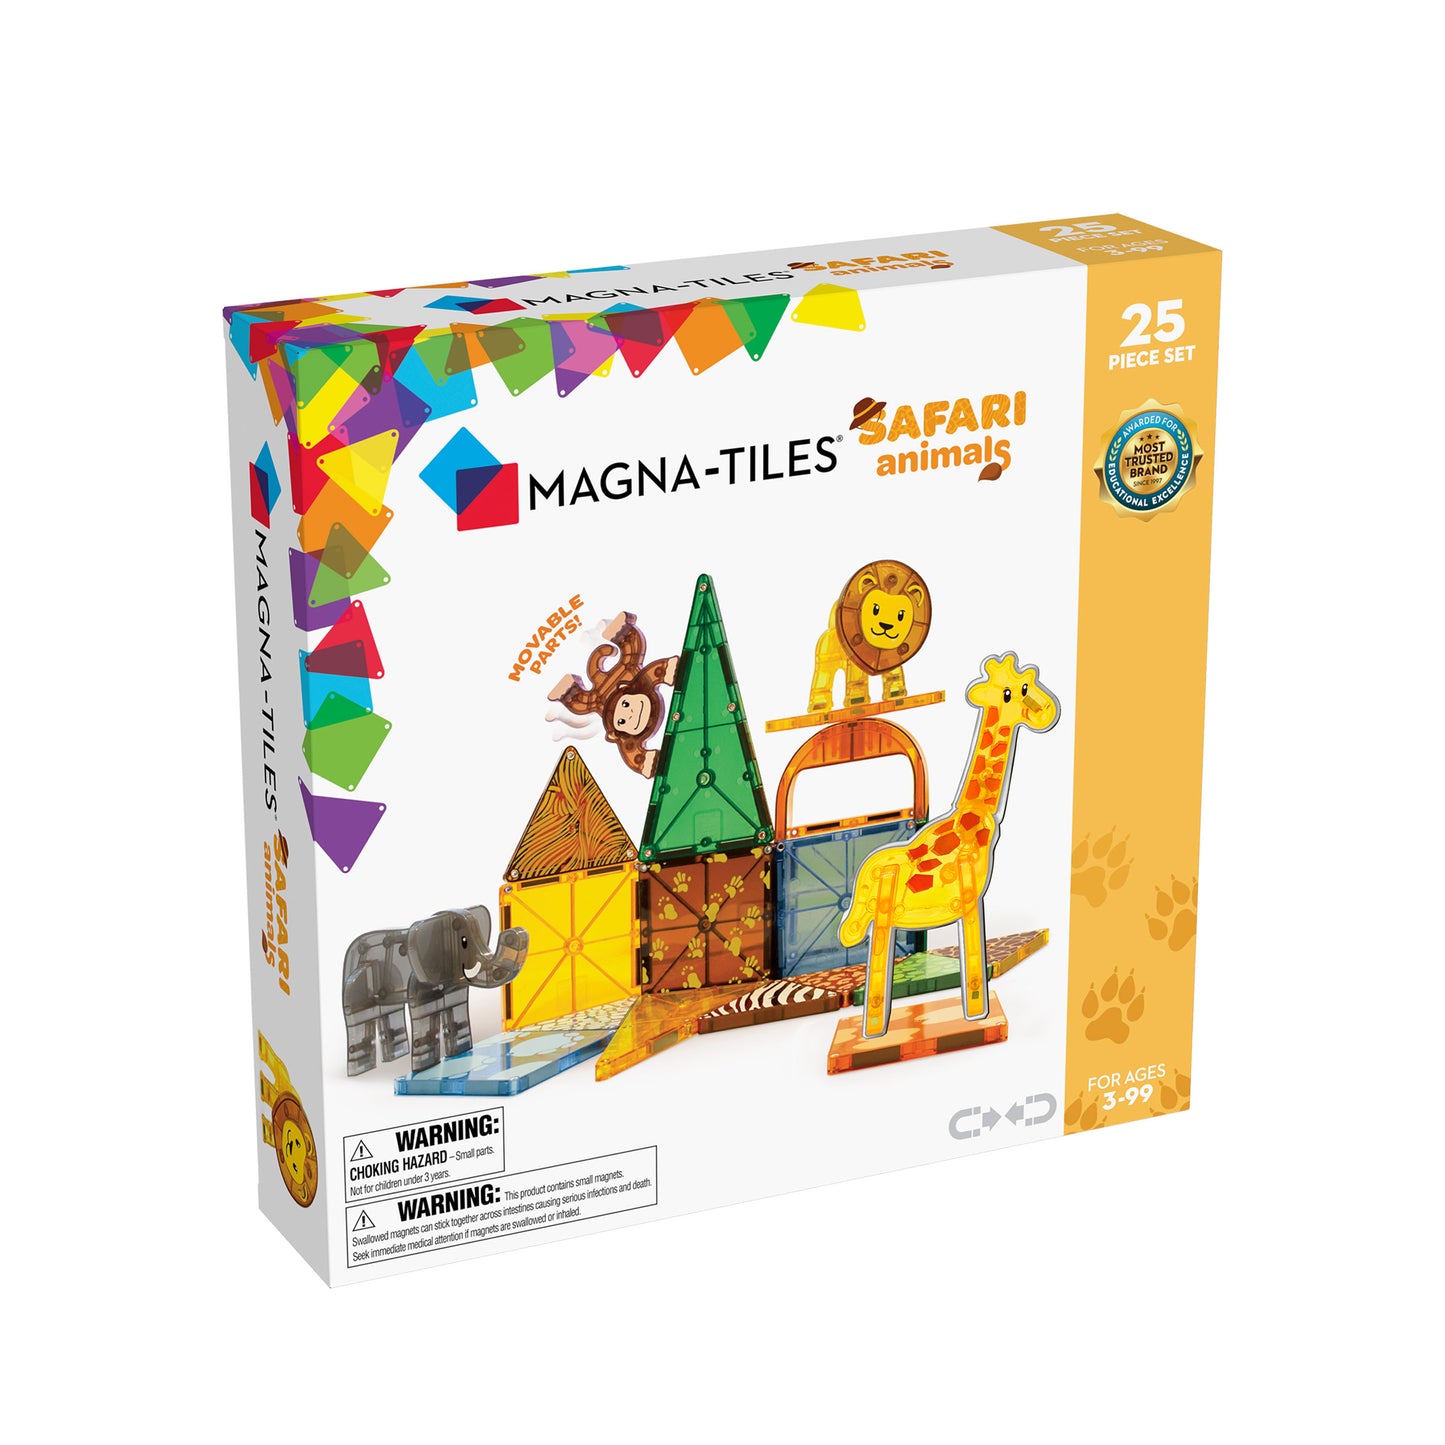 Magna-Tiles – Safari Animals – 25 Piece Set